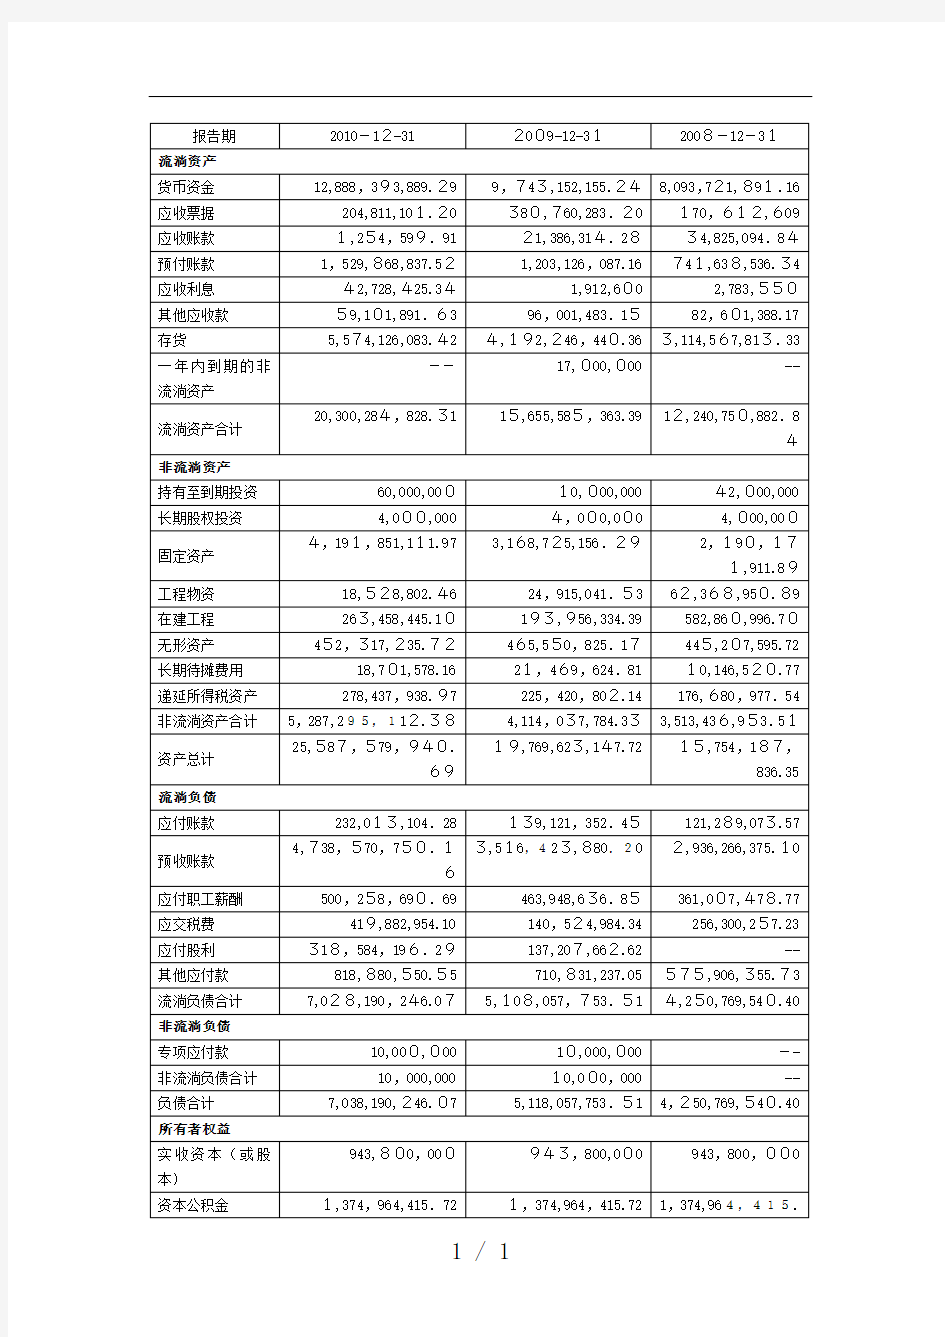 贵州茅台公司财务分析报告